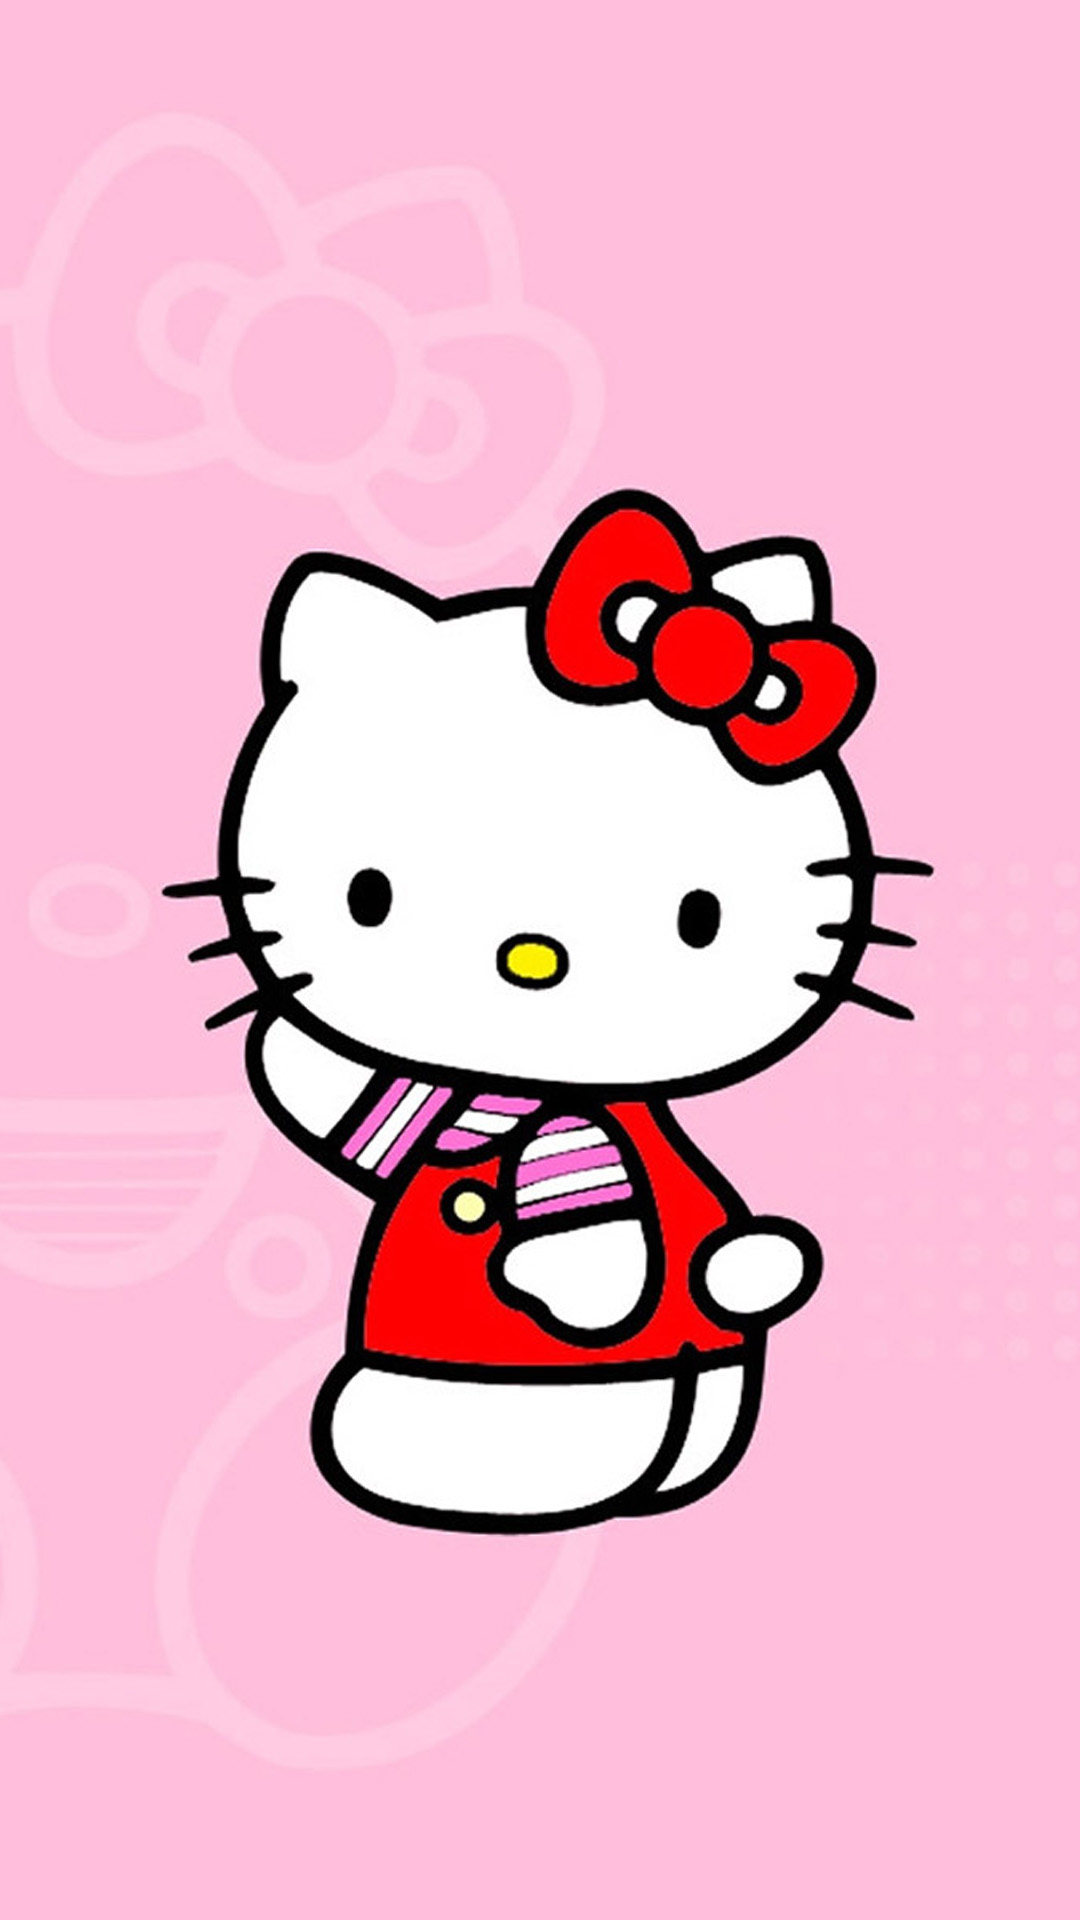 Hello Kitty Wallpapers: Với những tín đồ của Hello Kitty, đây là lựa chọn hình nền tuyệt vời để thể hiện sự yêu thích. Tất cả các bức hình nền của chúng tôi đều được thiết kế với hình ảnh và các màu sắc đầy mê hoặc của Hello Kitty, đảm bảo cho bạn một trải nghiệm đầy cảm xúc và tuyệt vời. Hãy tải ngay một trong số những bức hình nền đáng yêu này để thể hiện sự yêu thích của bạn!